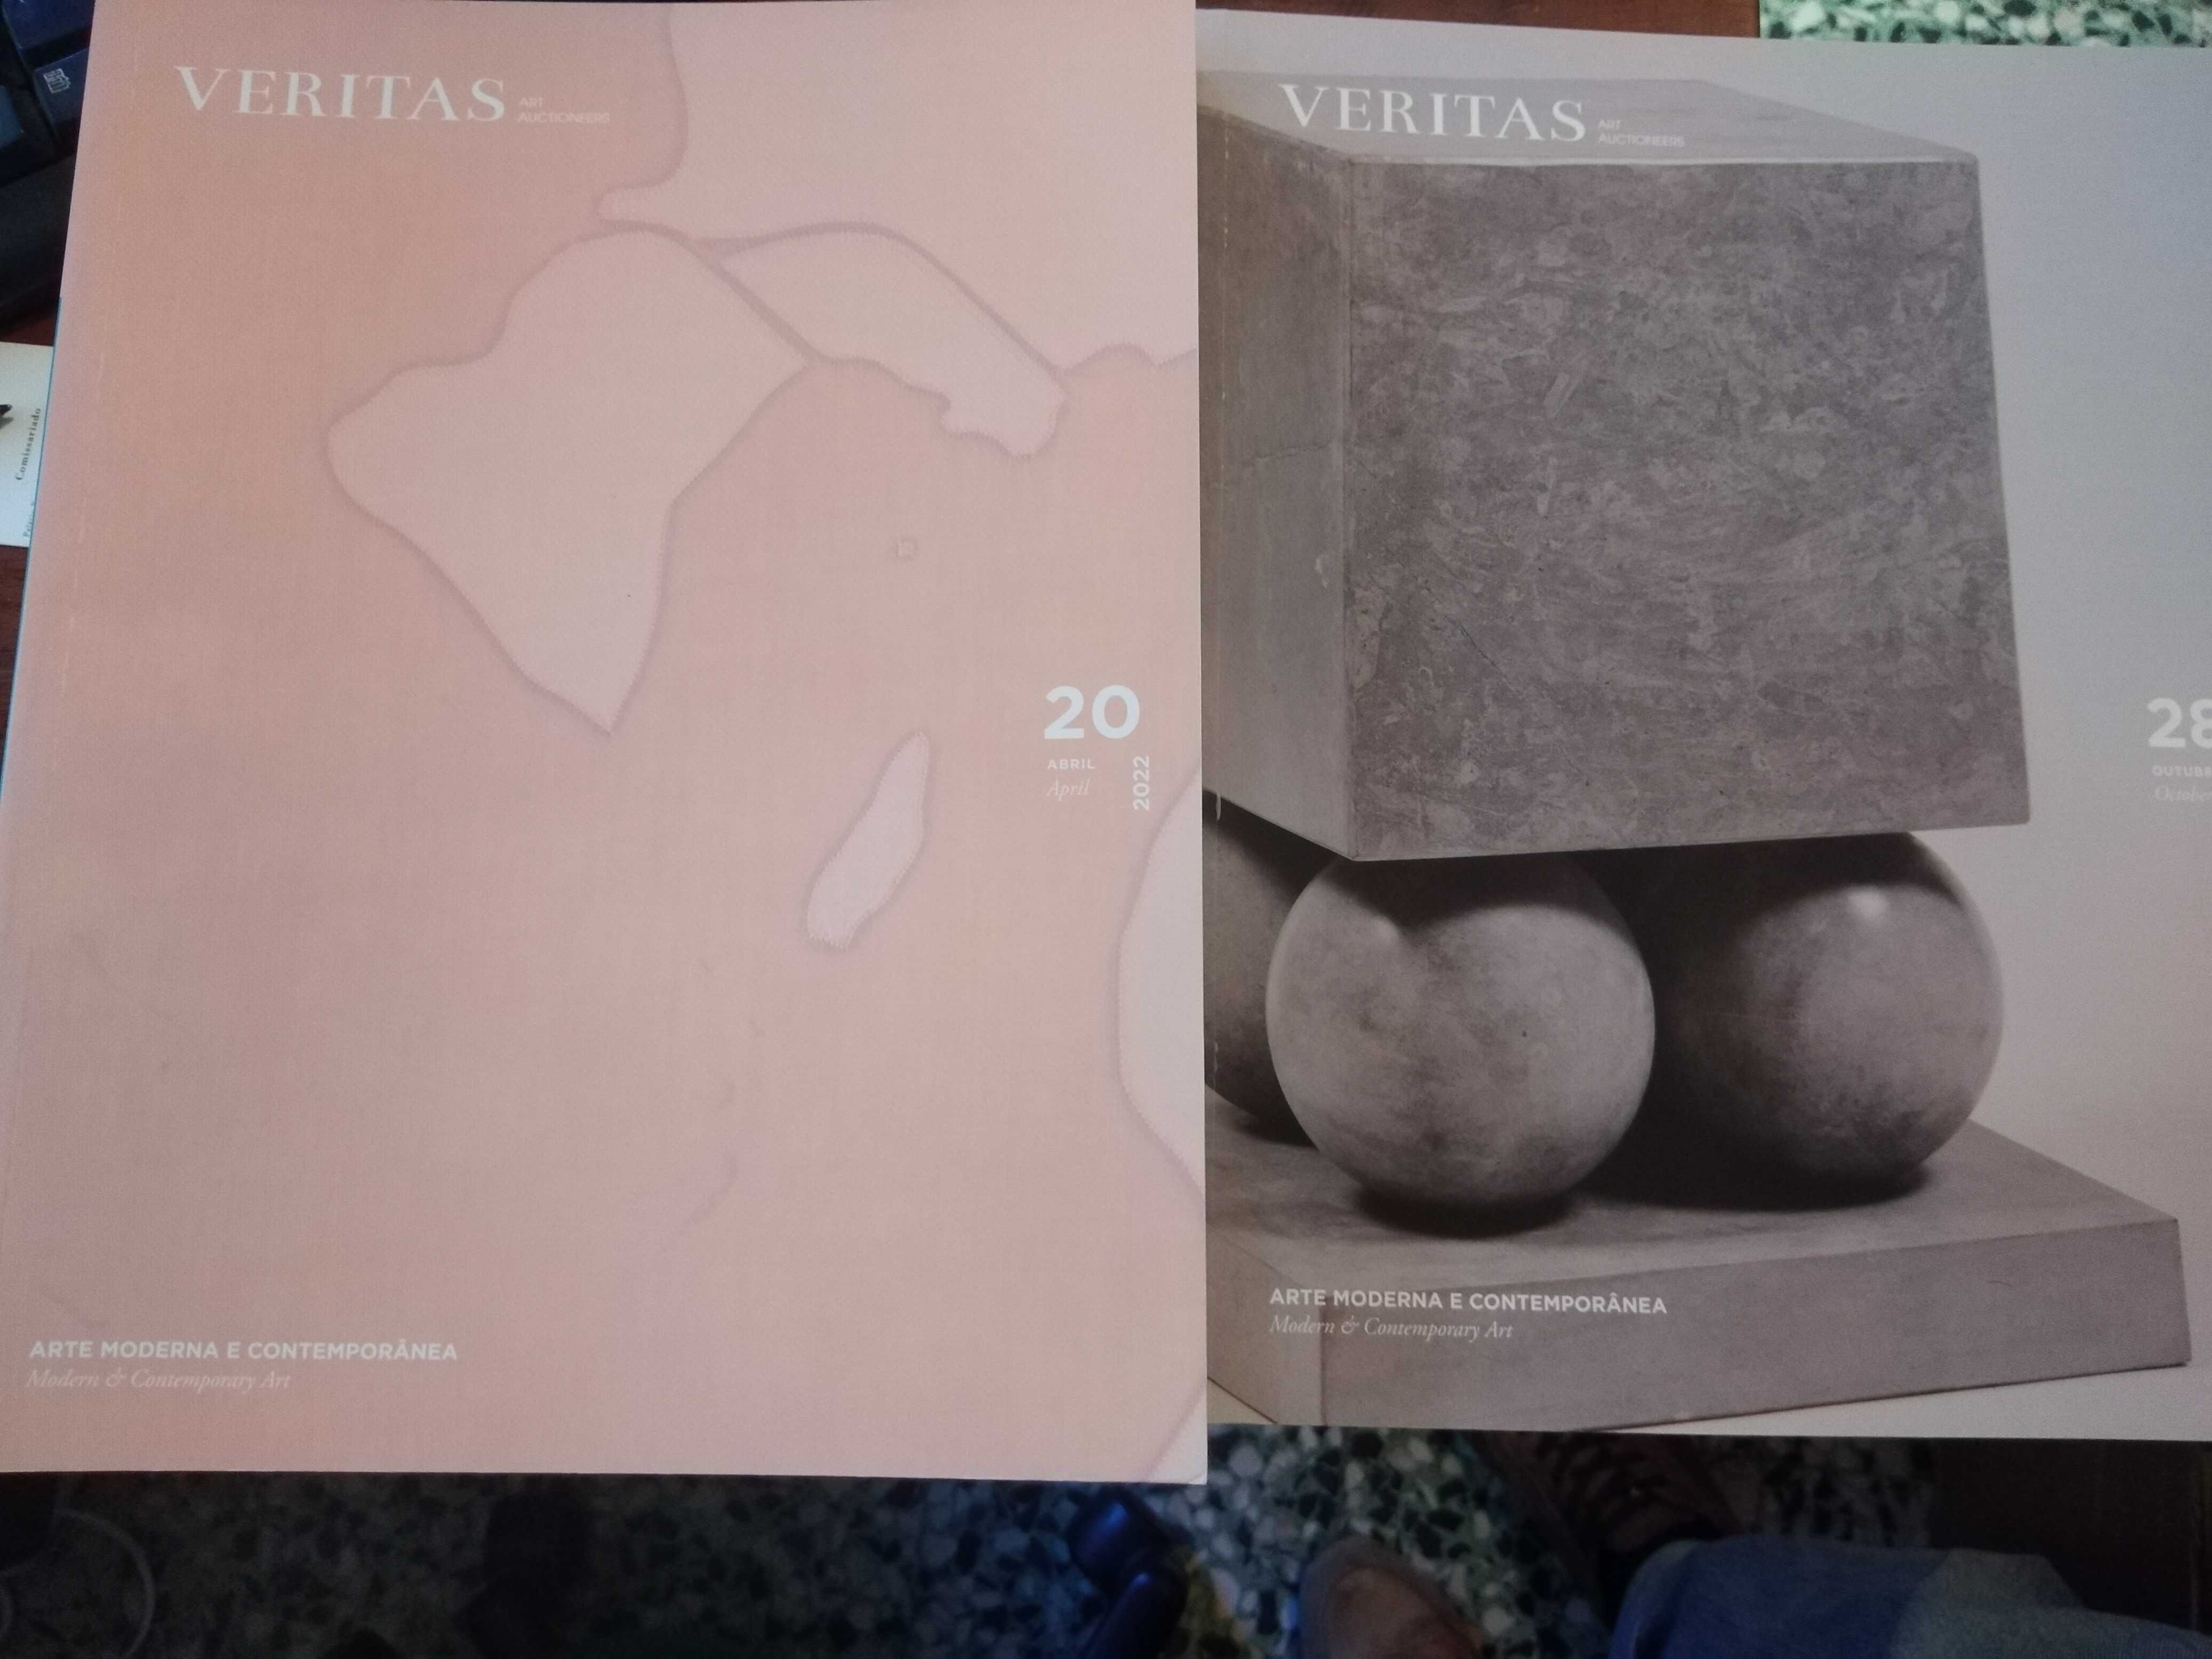 Catálogos Veritas (vários volumes)